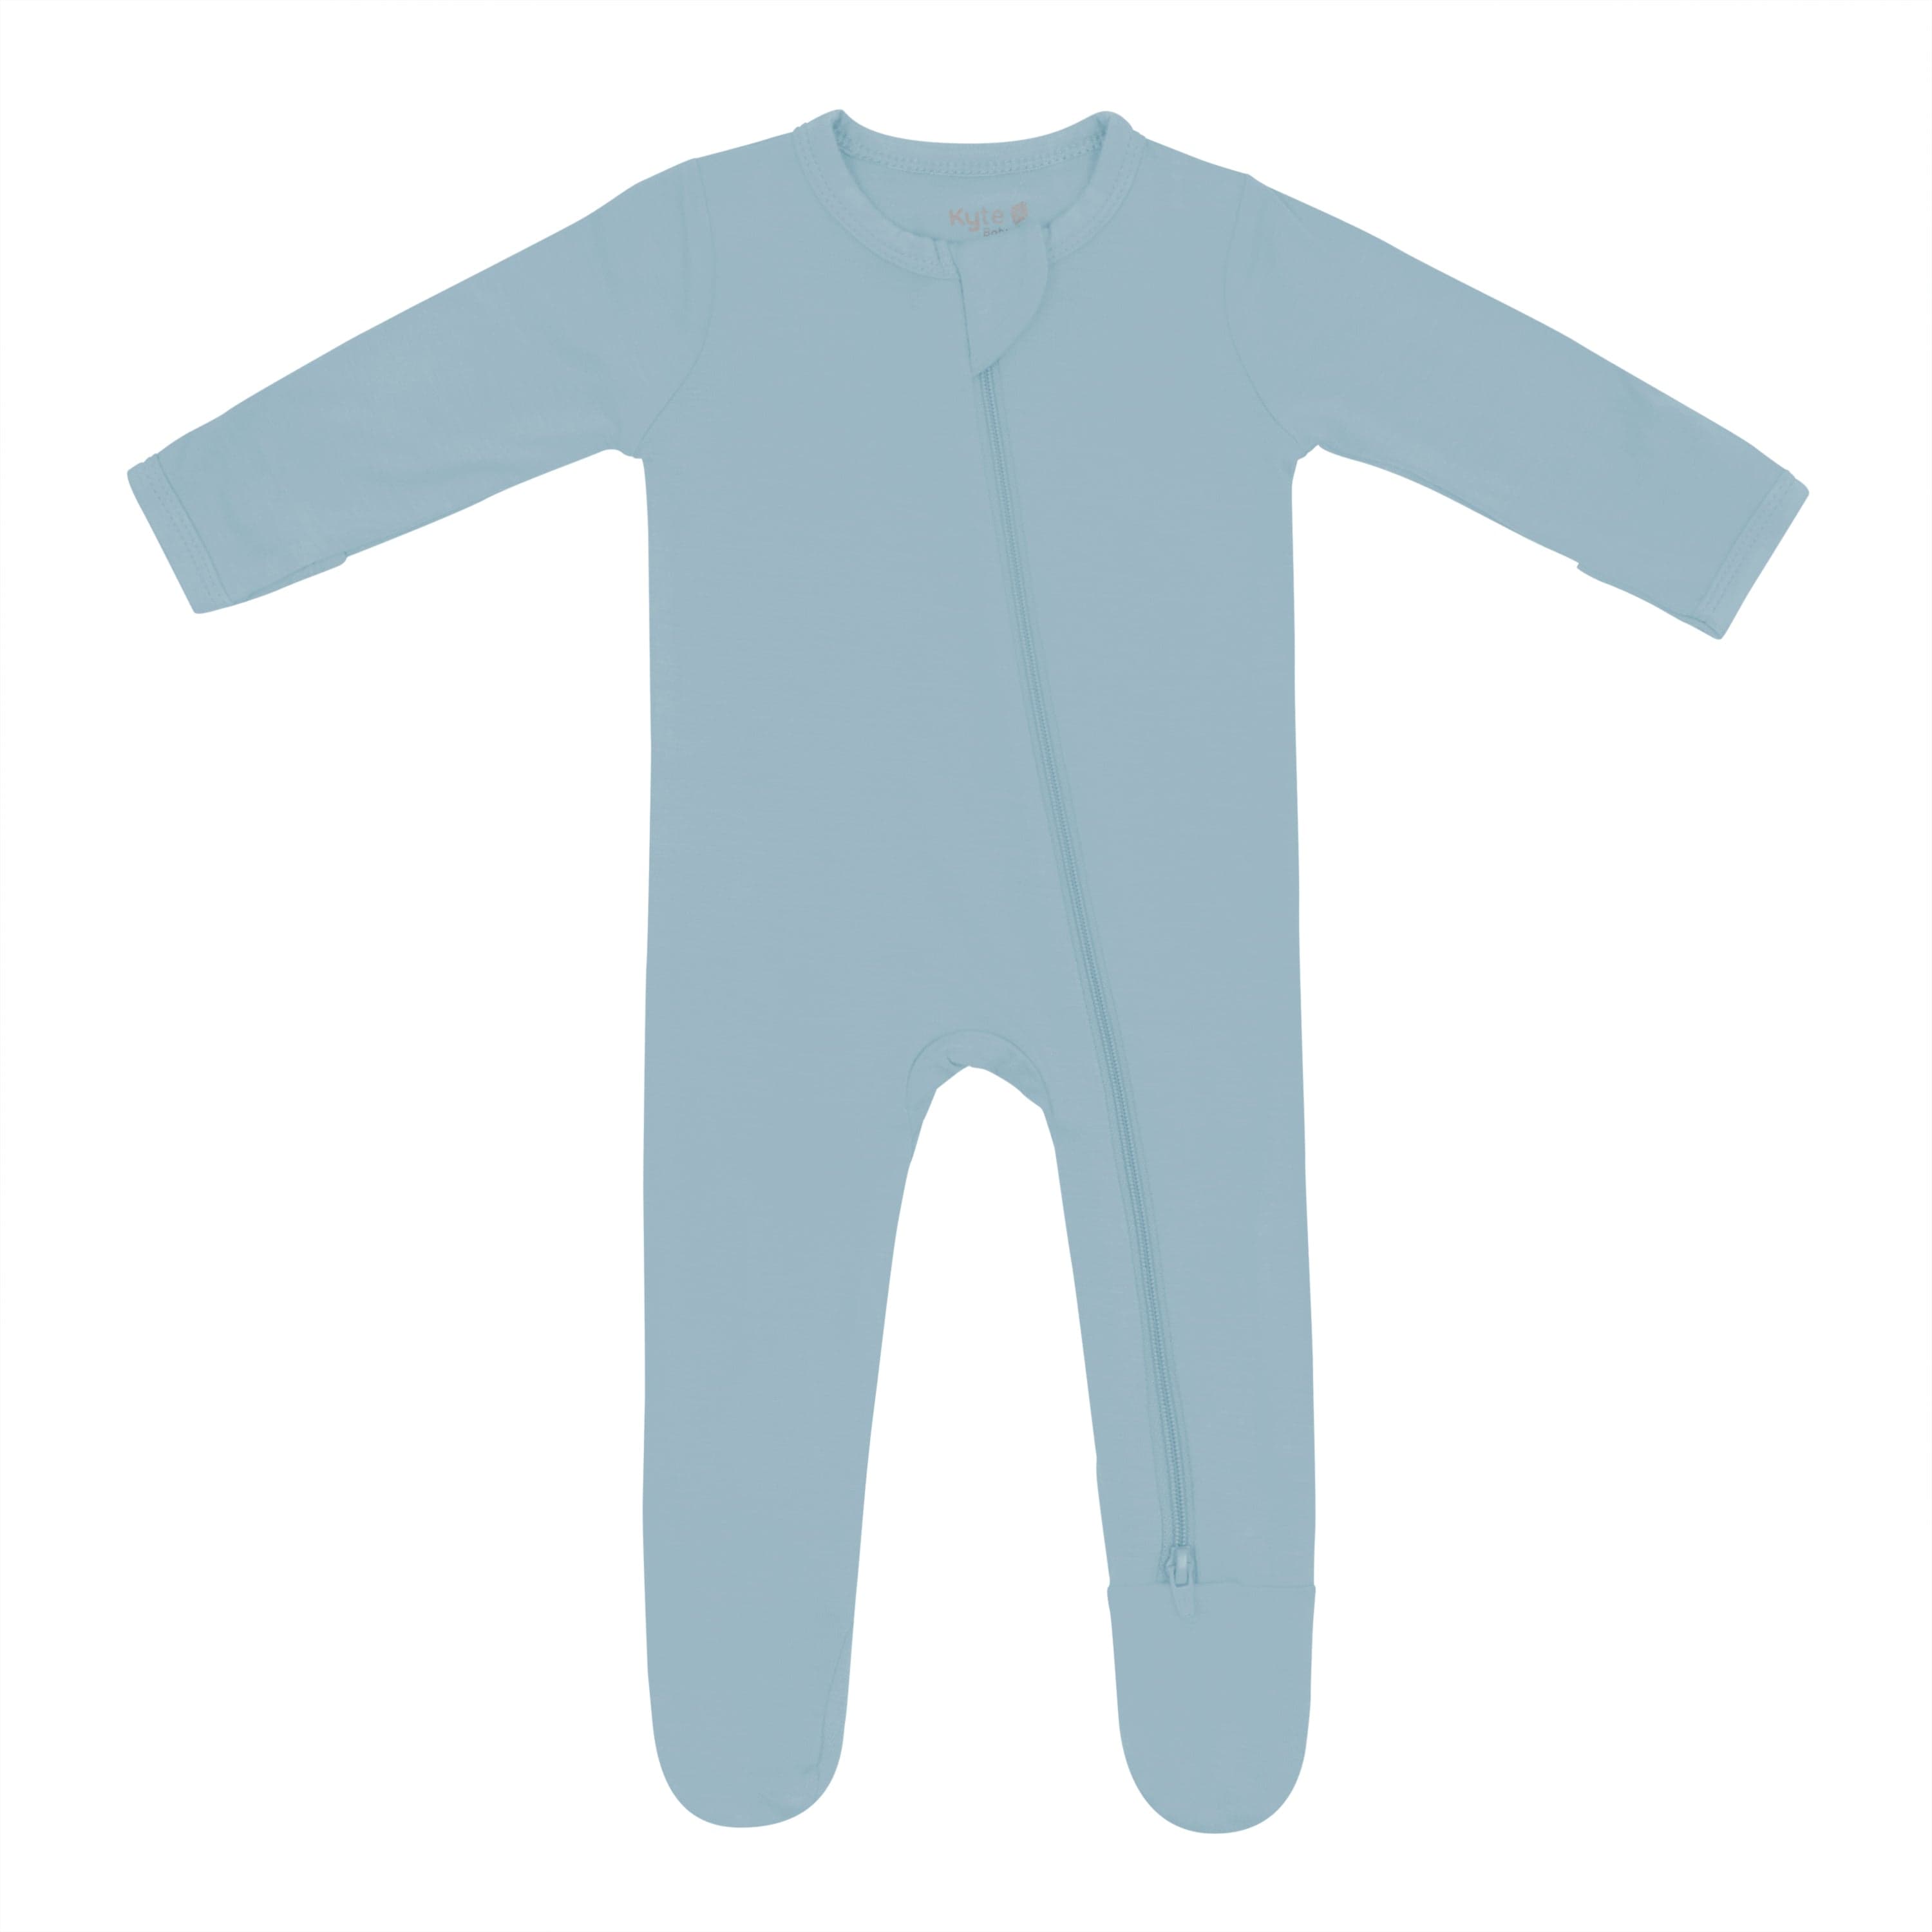 Unisex Short-Sleeve Bodysuit & U-Shaped Pull-On Pants Set for Baby